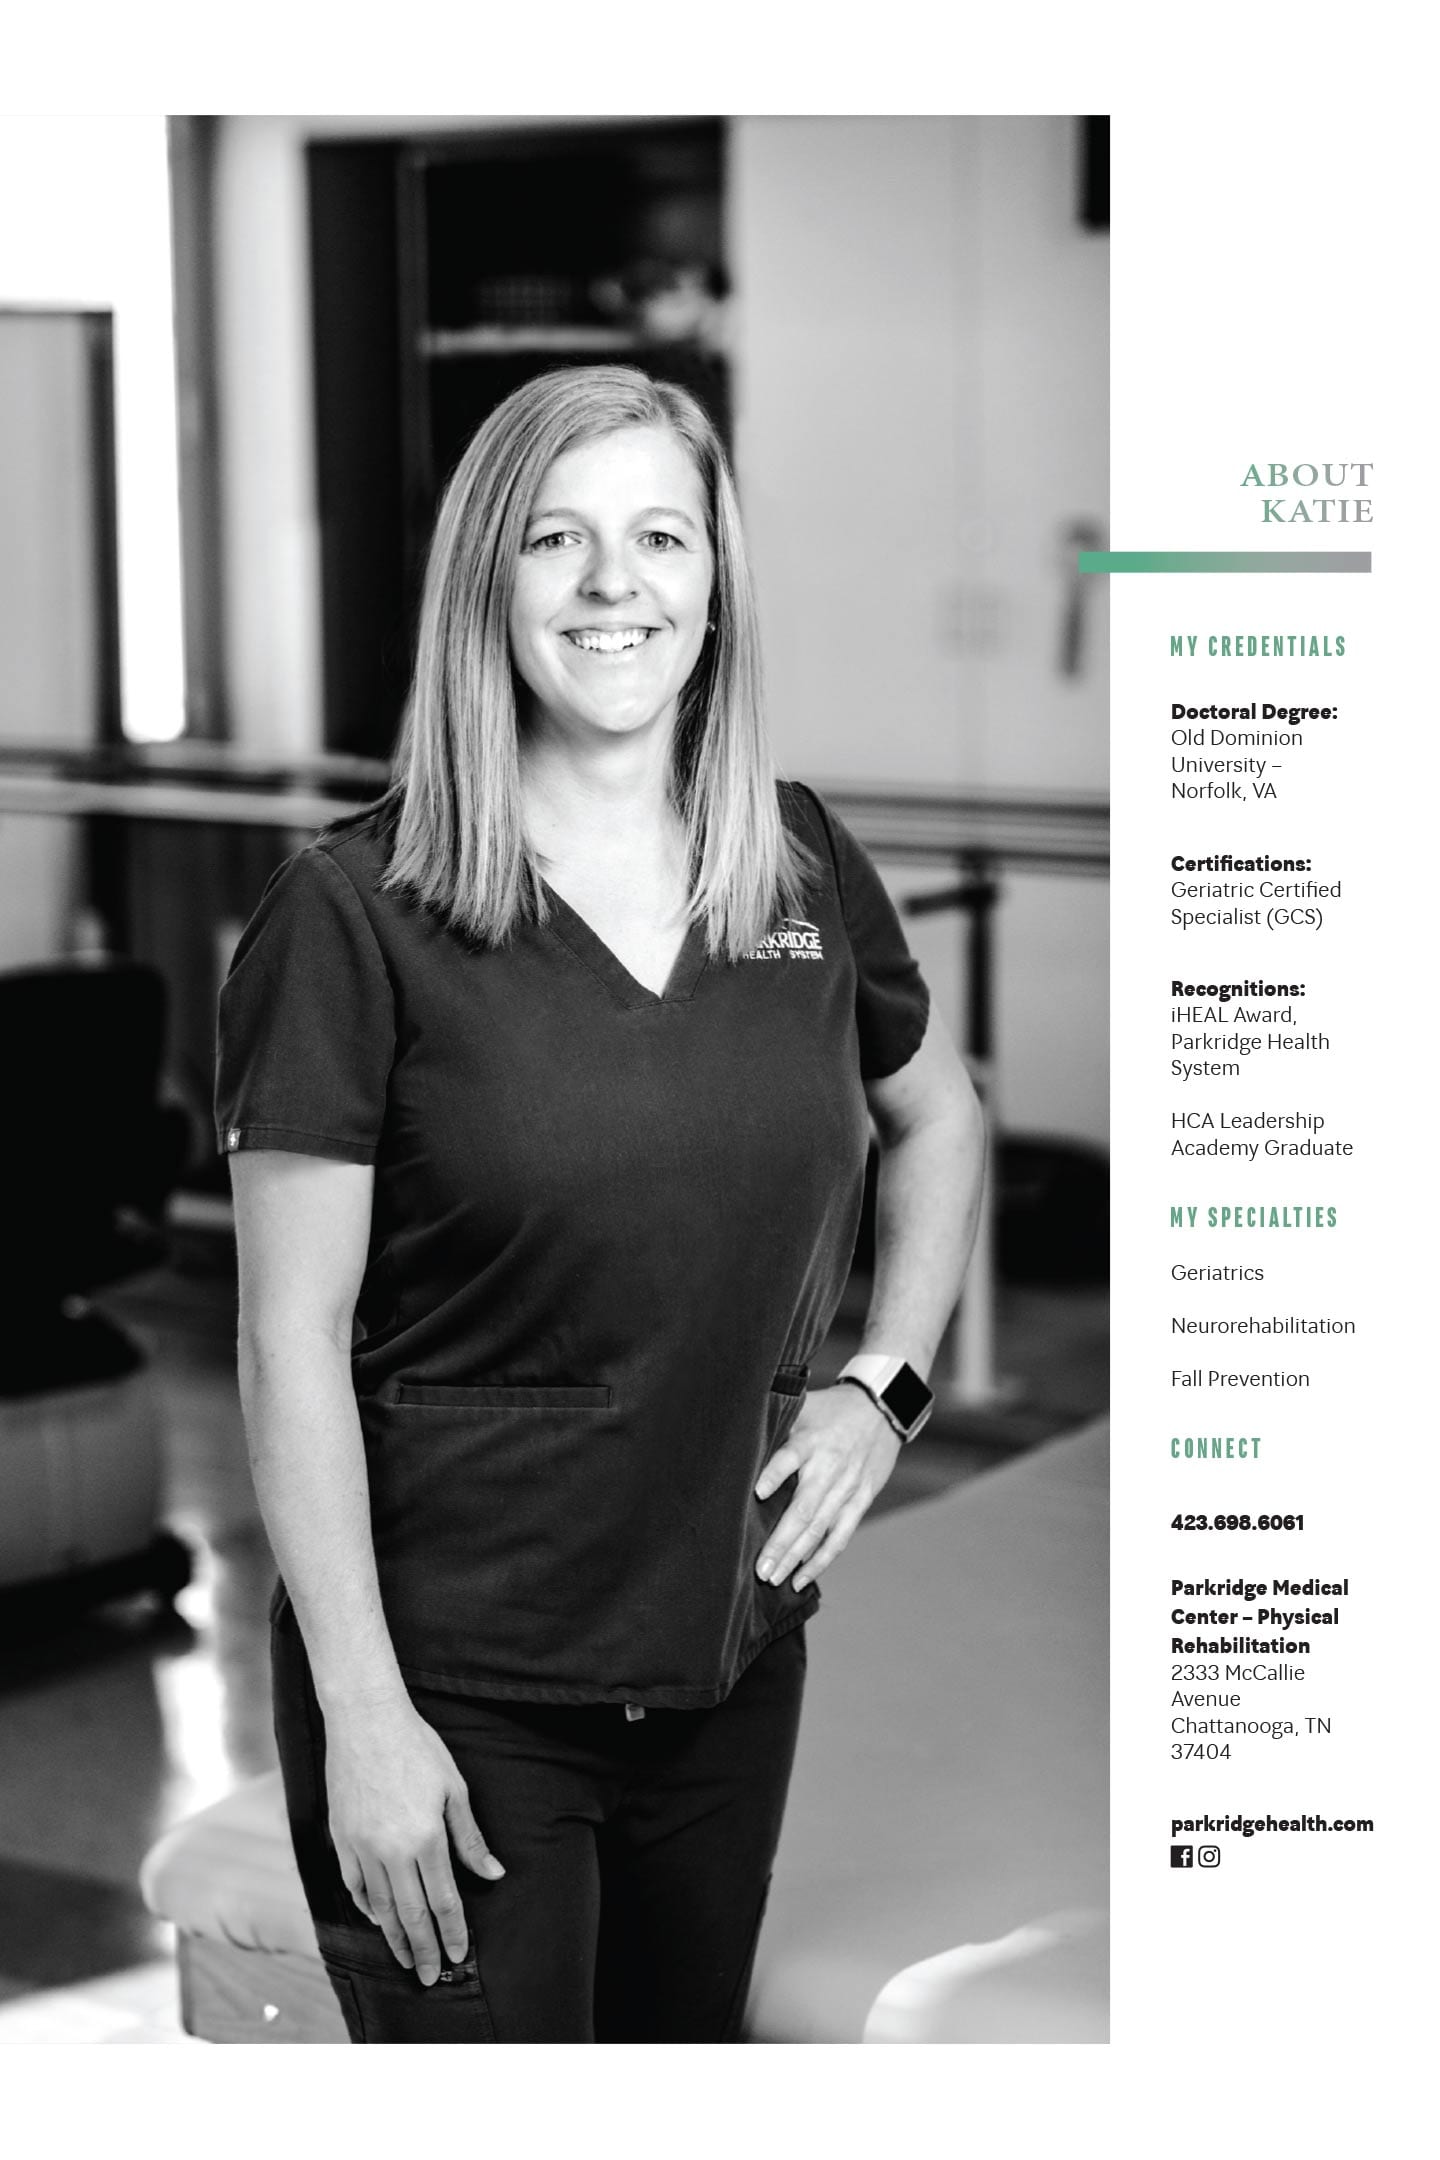 Katie O’Bryan, DPT, GCS at Parkridge Medical Center – Physical Rehabilitation